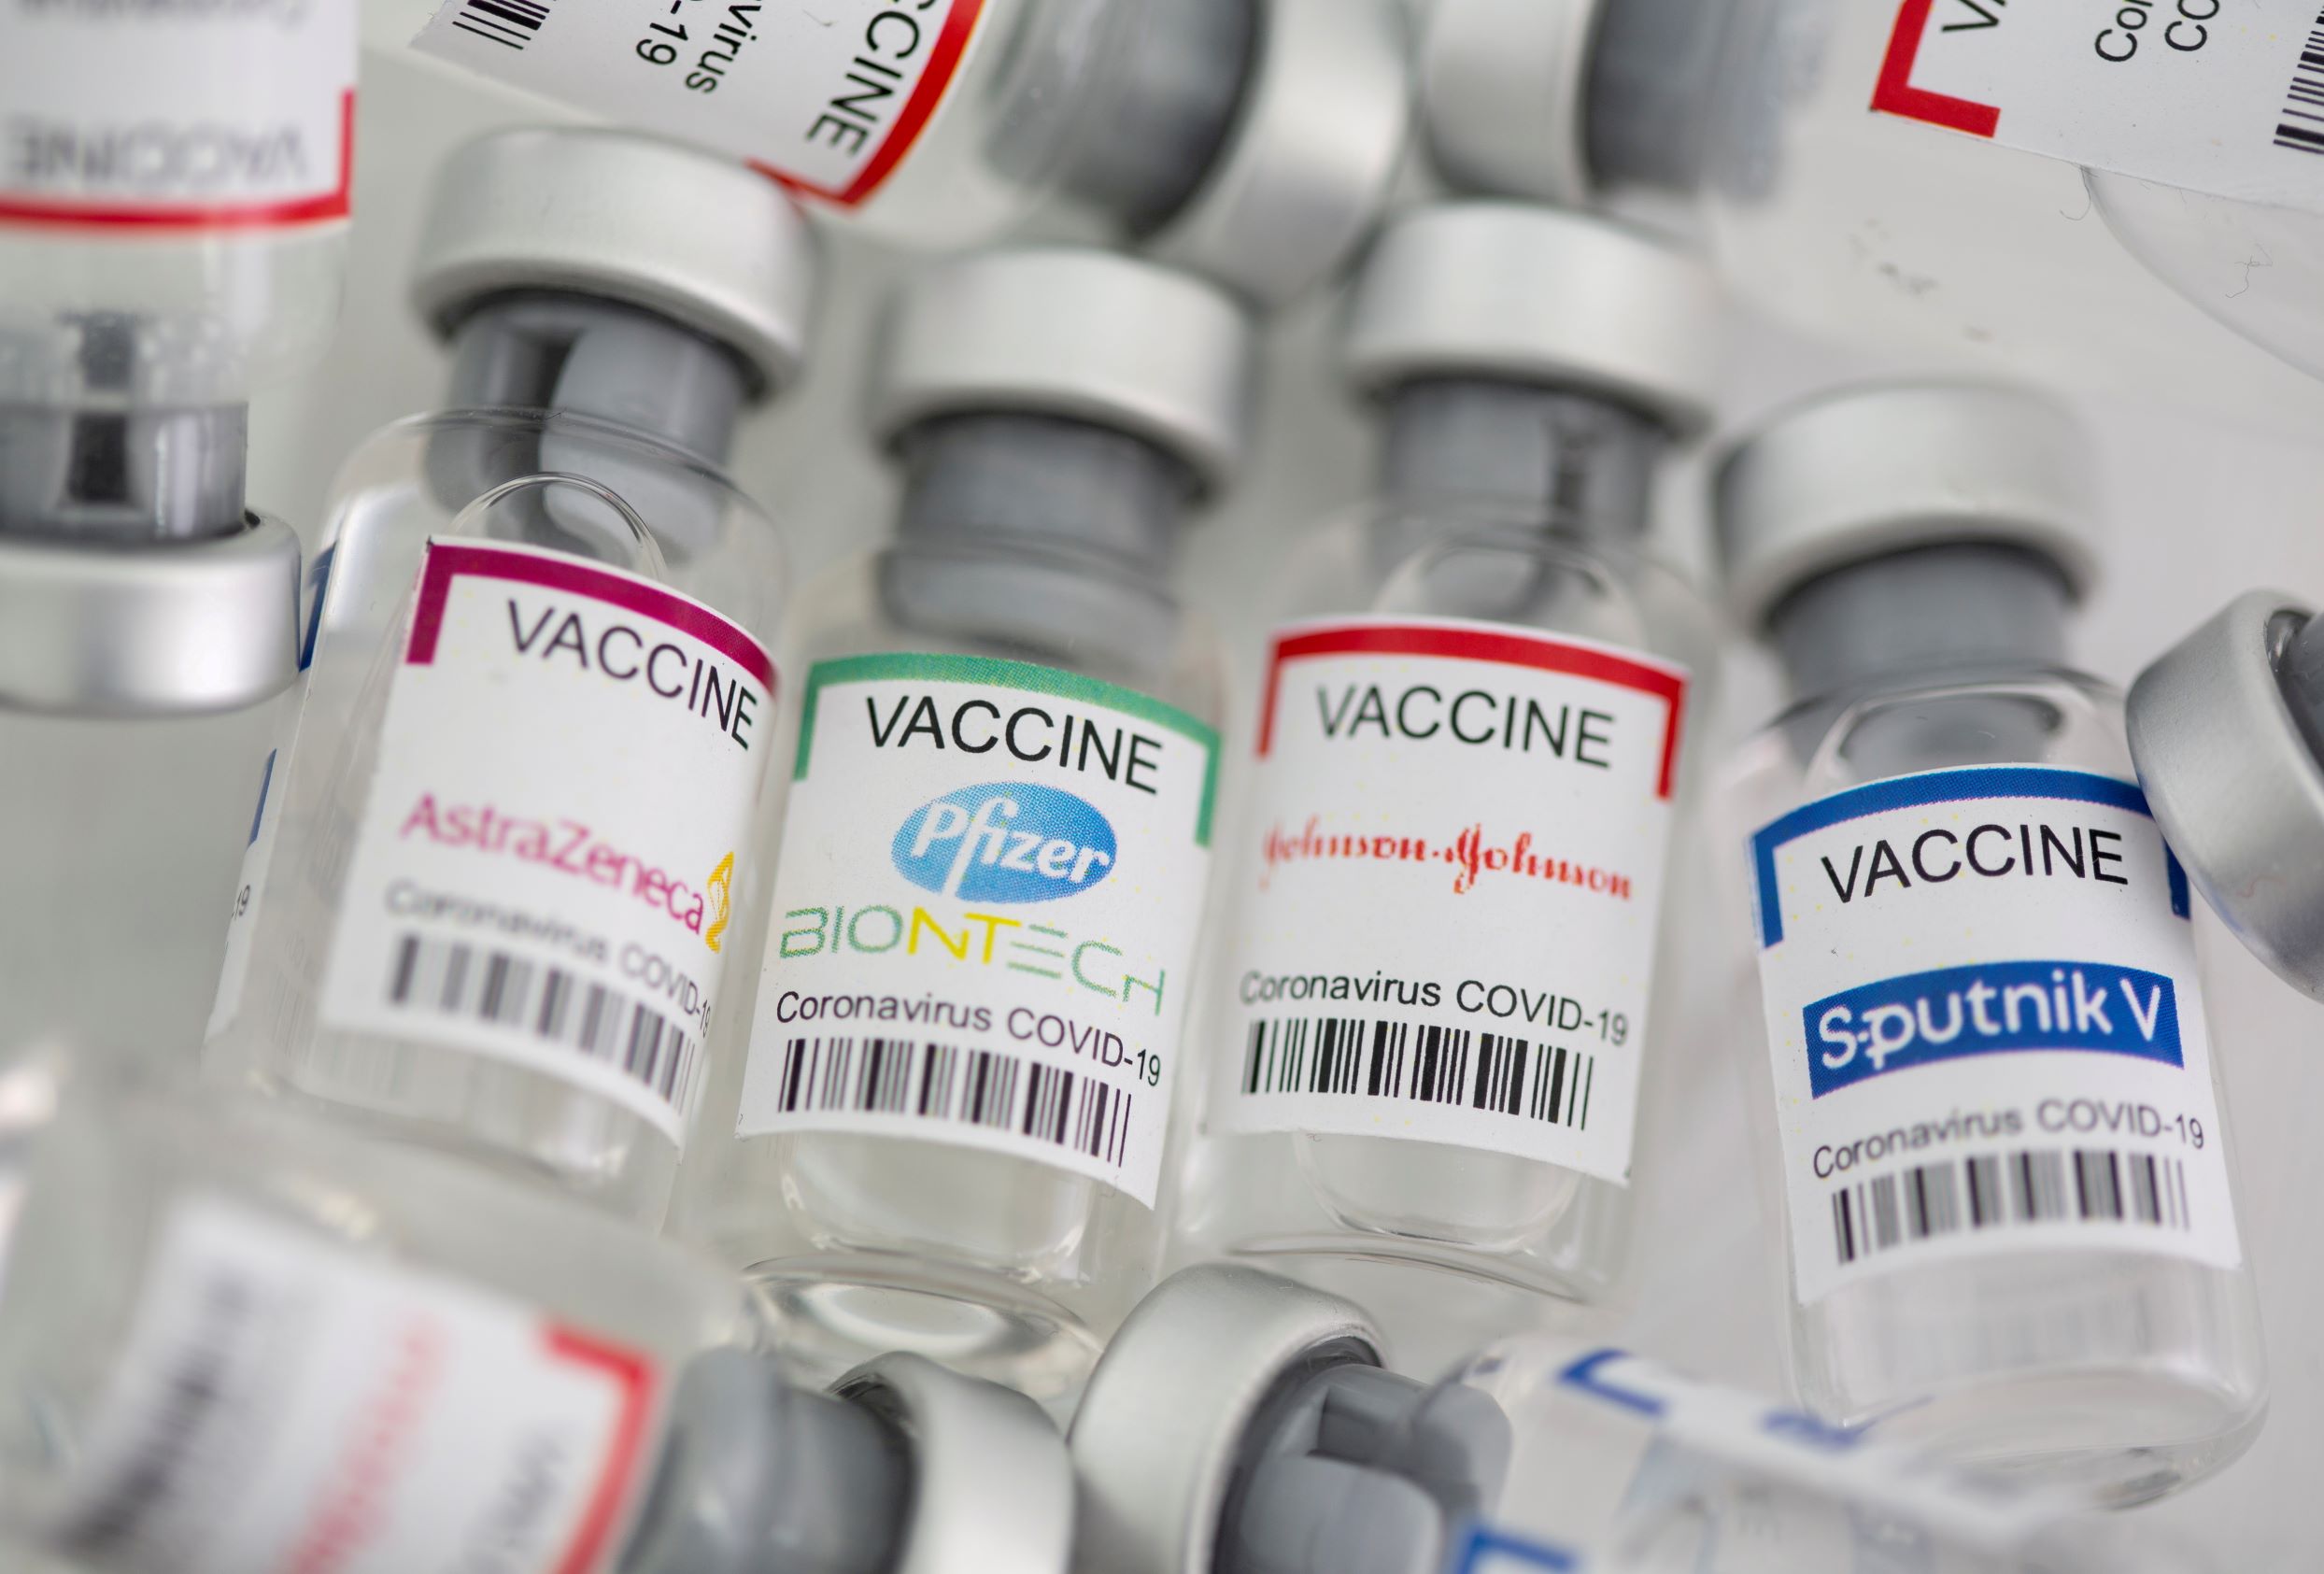 Các lọ có nhãn “vaccine COVID-19 của AstraZeneca, Pfizer-BioNTech, Johnson & Johnson và Sputnik V.” Ảnh chụp ngày 02/05/2021. (Dado Ruvic/Illustration/Reuters)